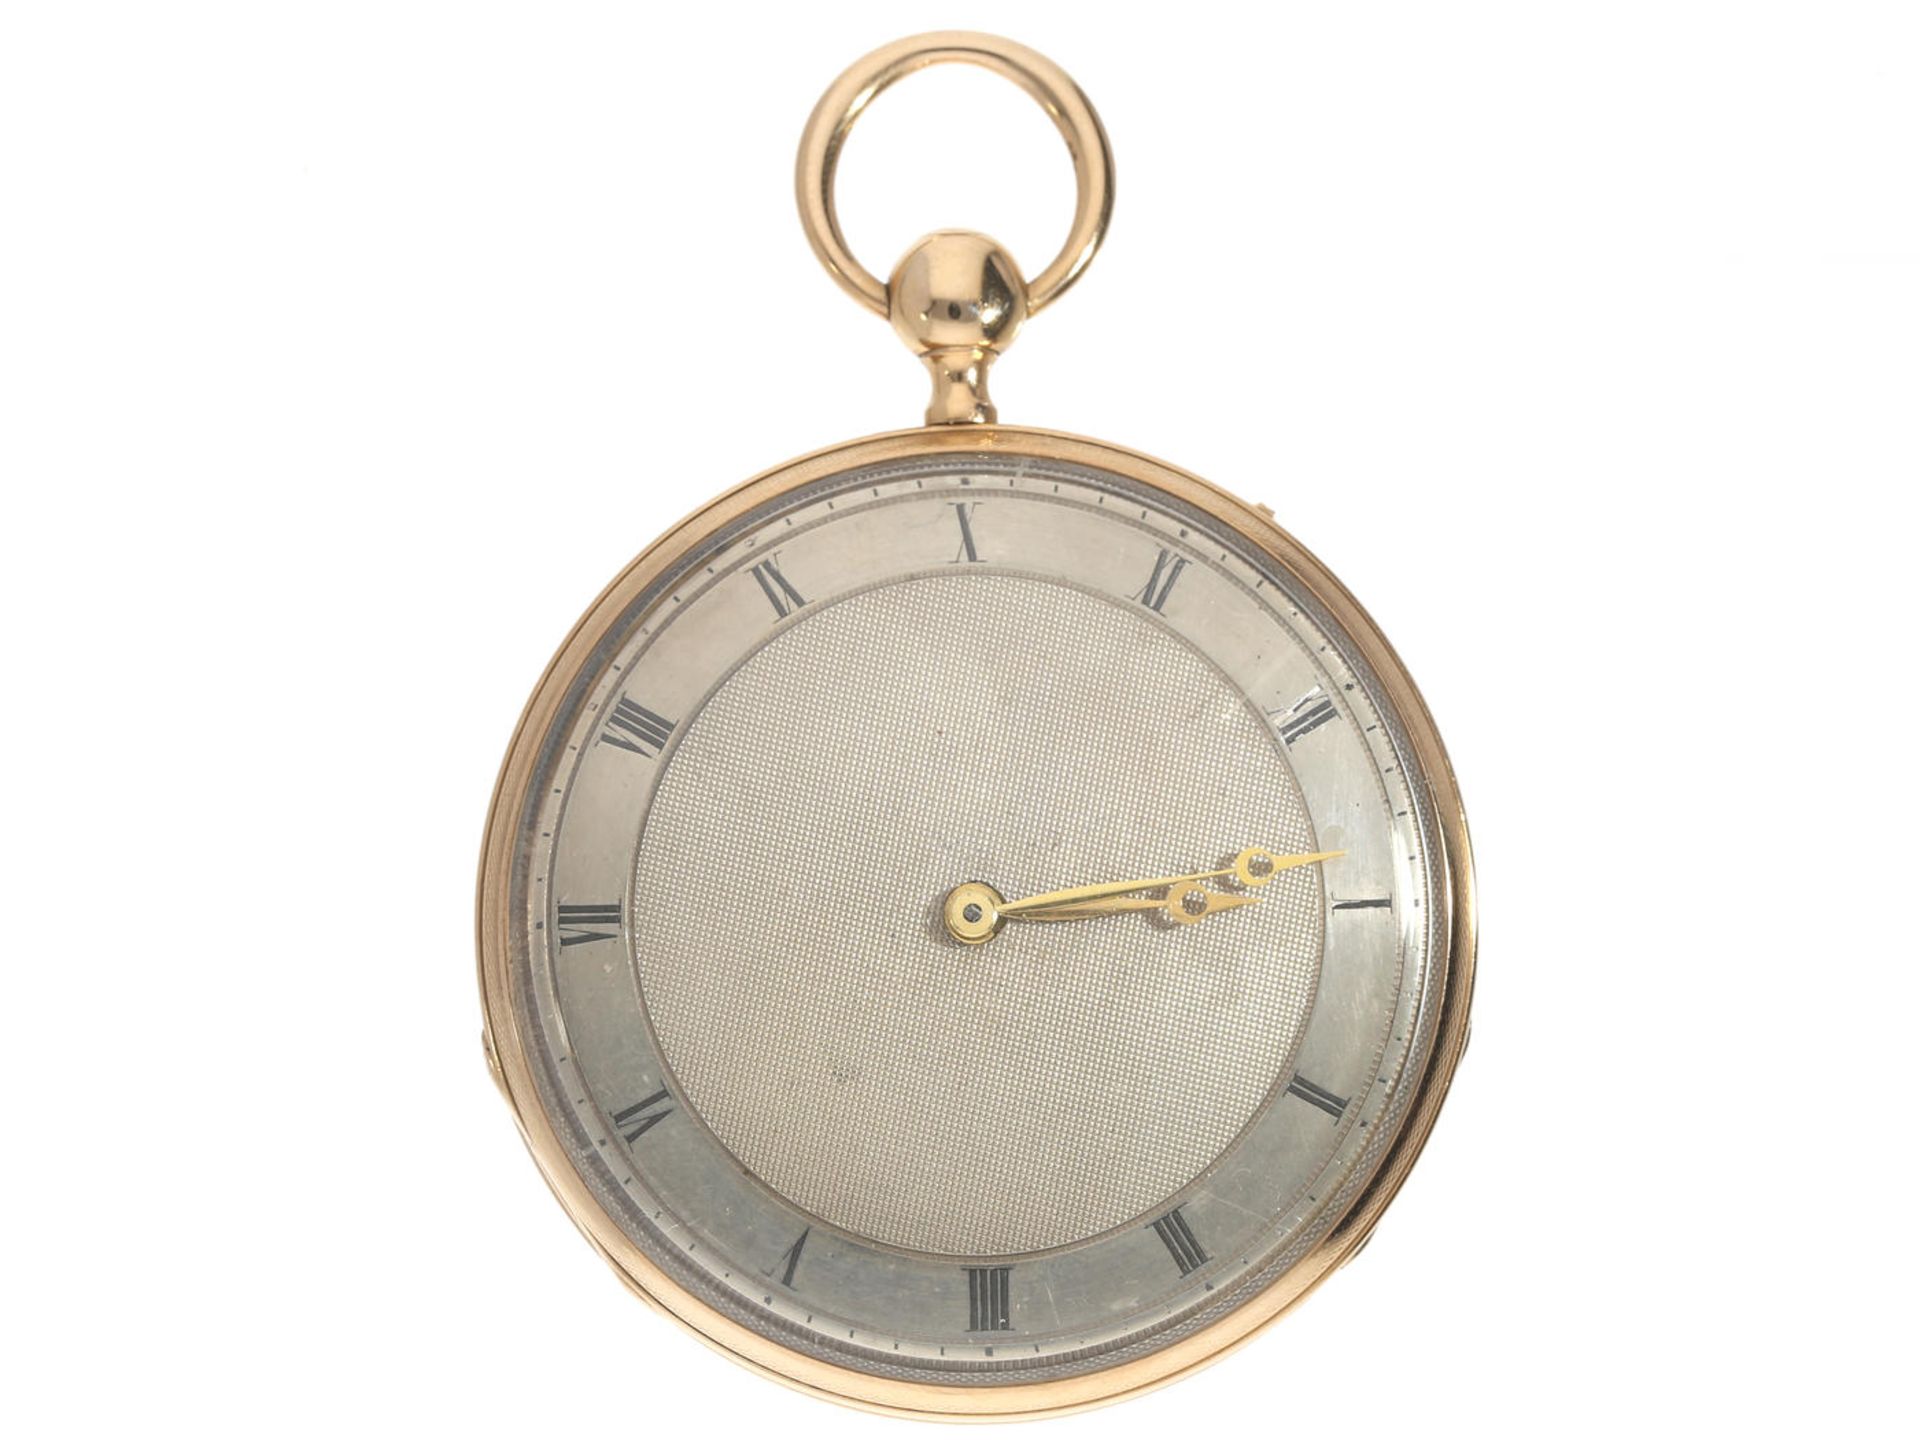 Taschenuhr: rotgoldene Lepine mit Repetition der Stunden und Viertelstunden, 18K Gold, um 1820 Ca.